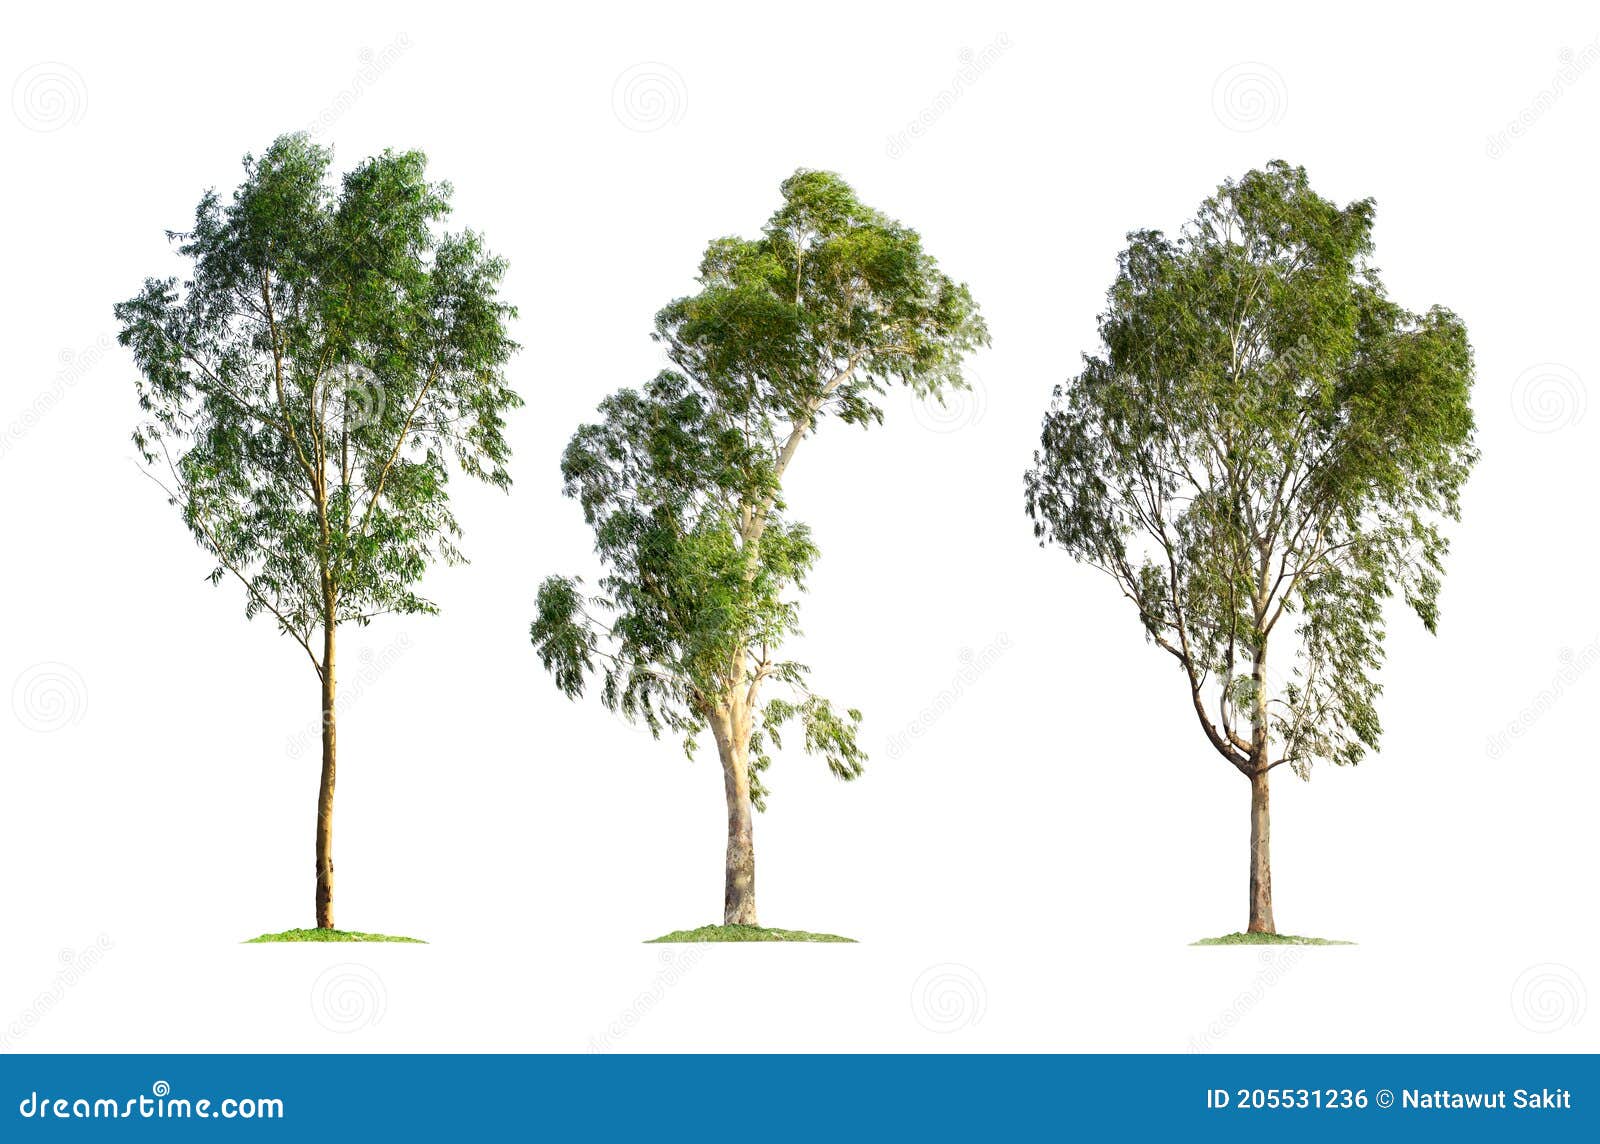 Объемные деревья из бумаги (73 фото)